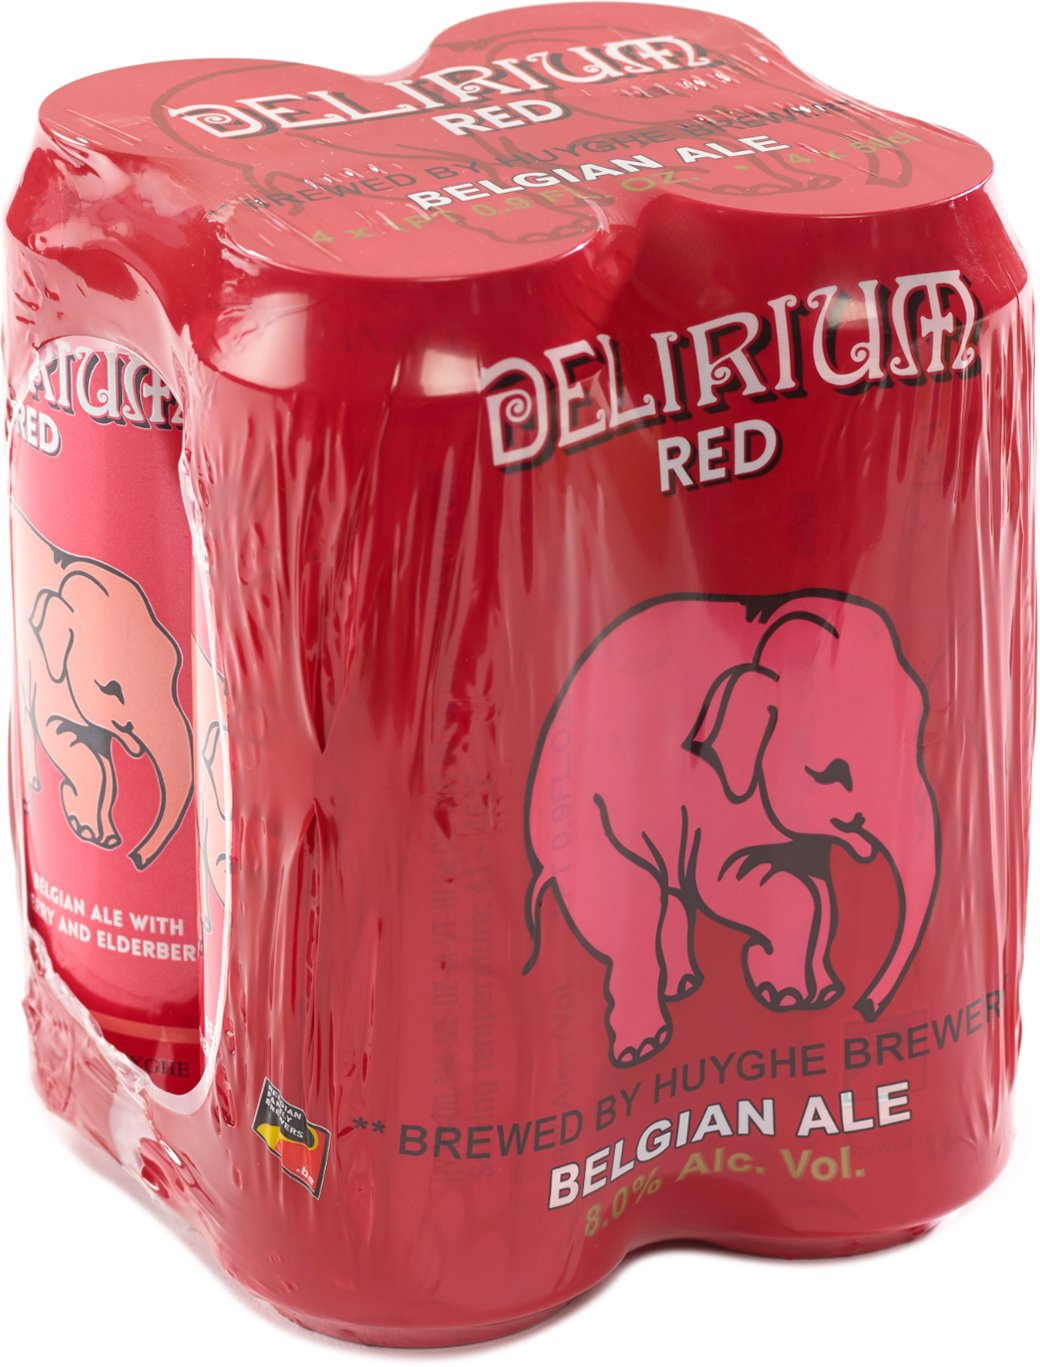 Delirium Red 4 pack of 16.9 oz